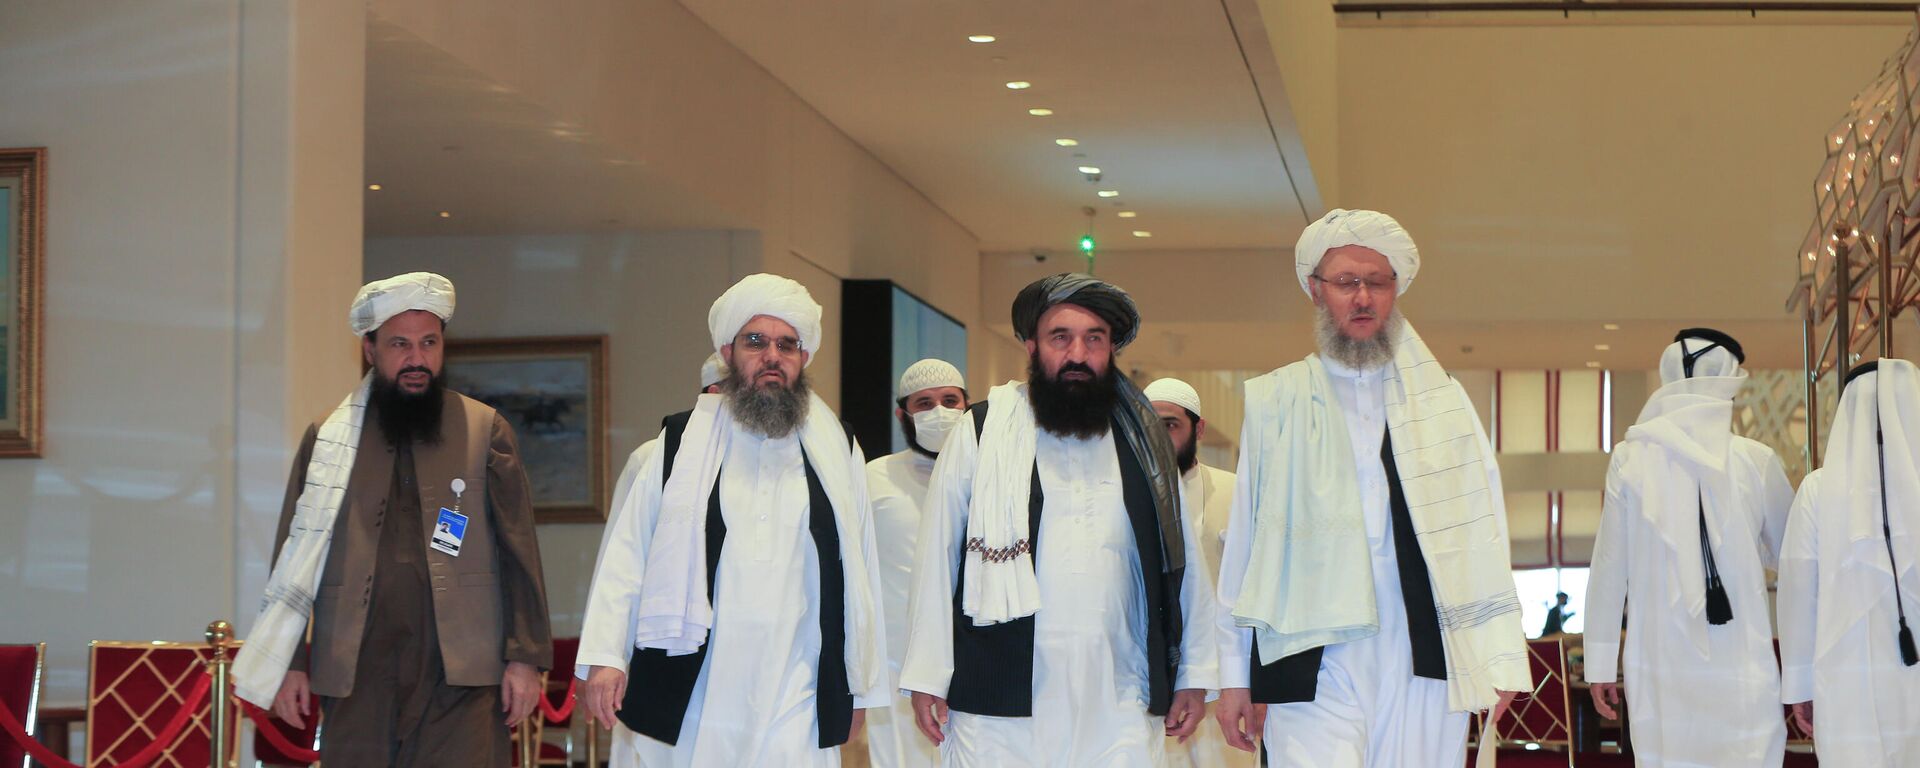 Una delegación de los talibanes - Sputnik Mundo, 1920, 19.10.2021